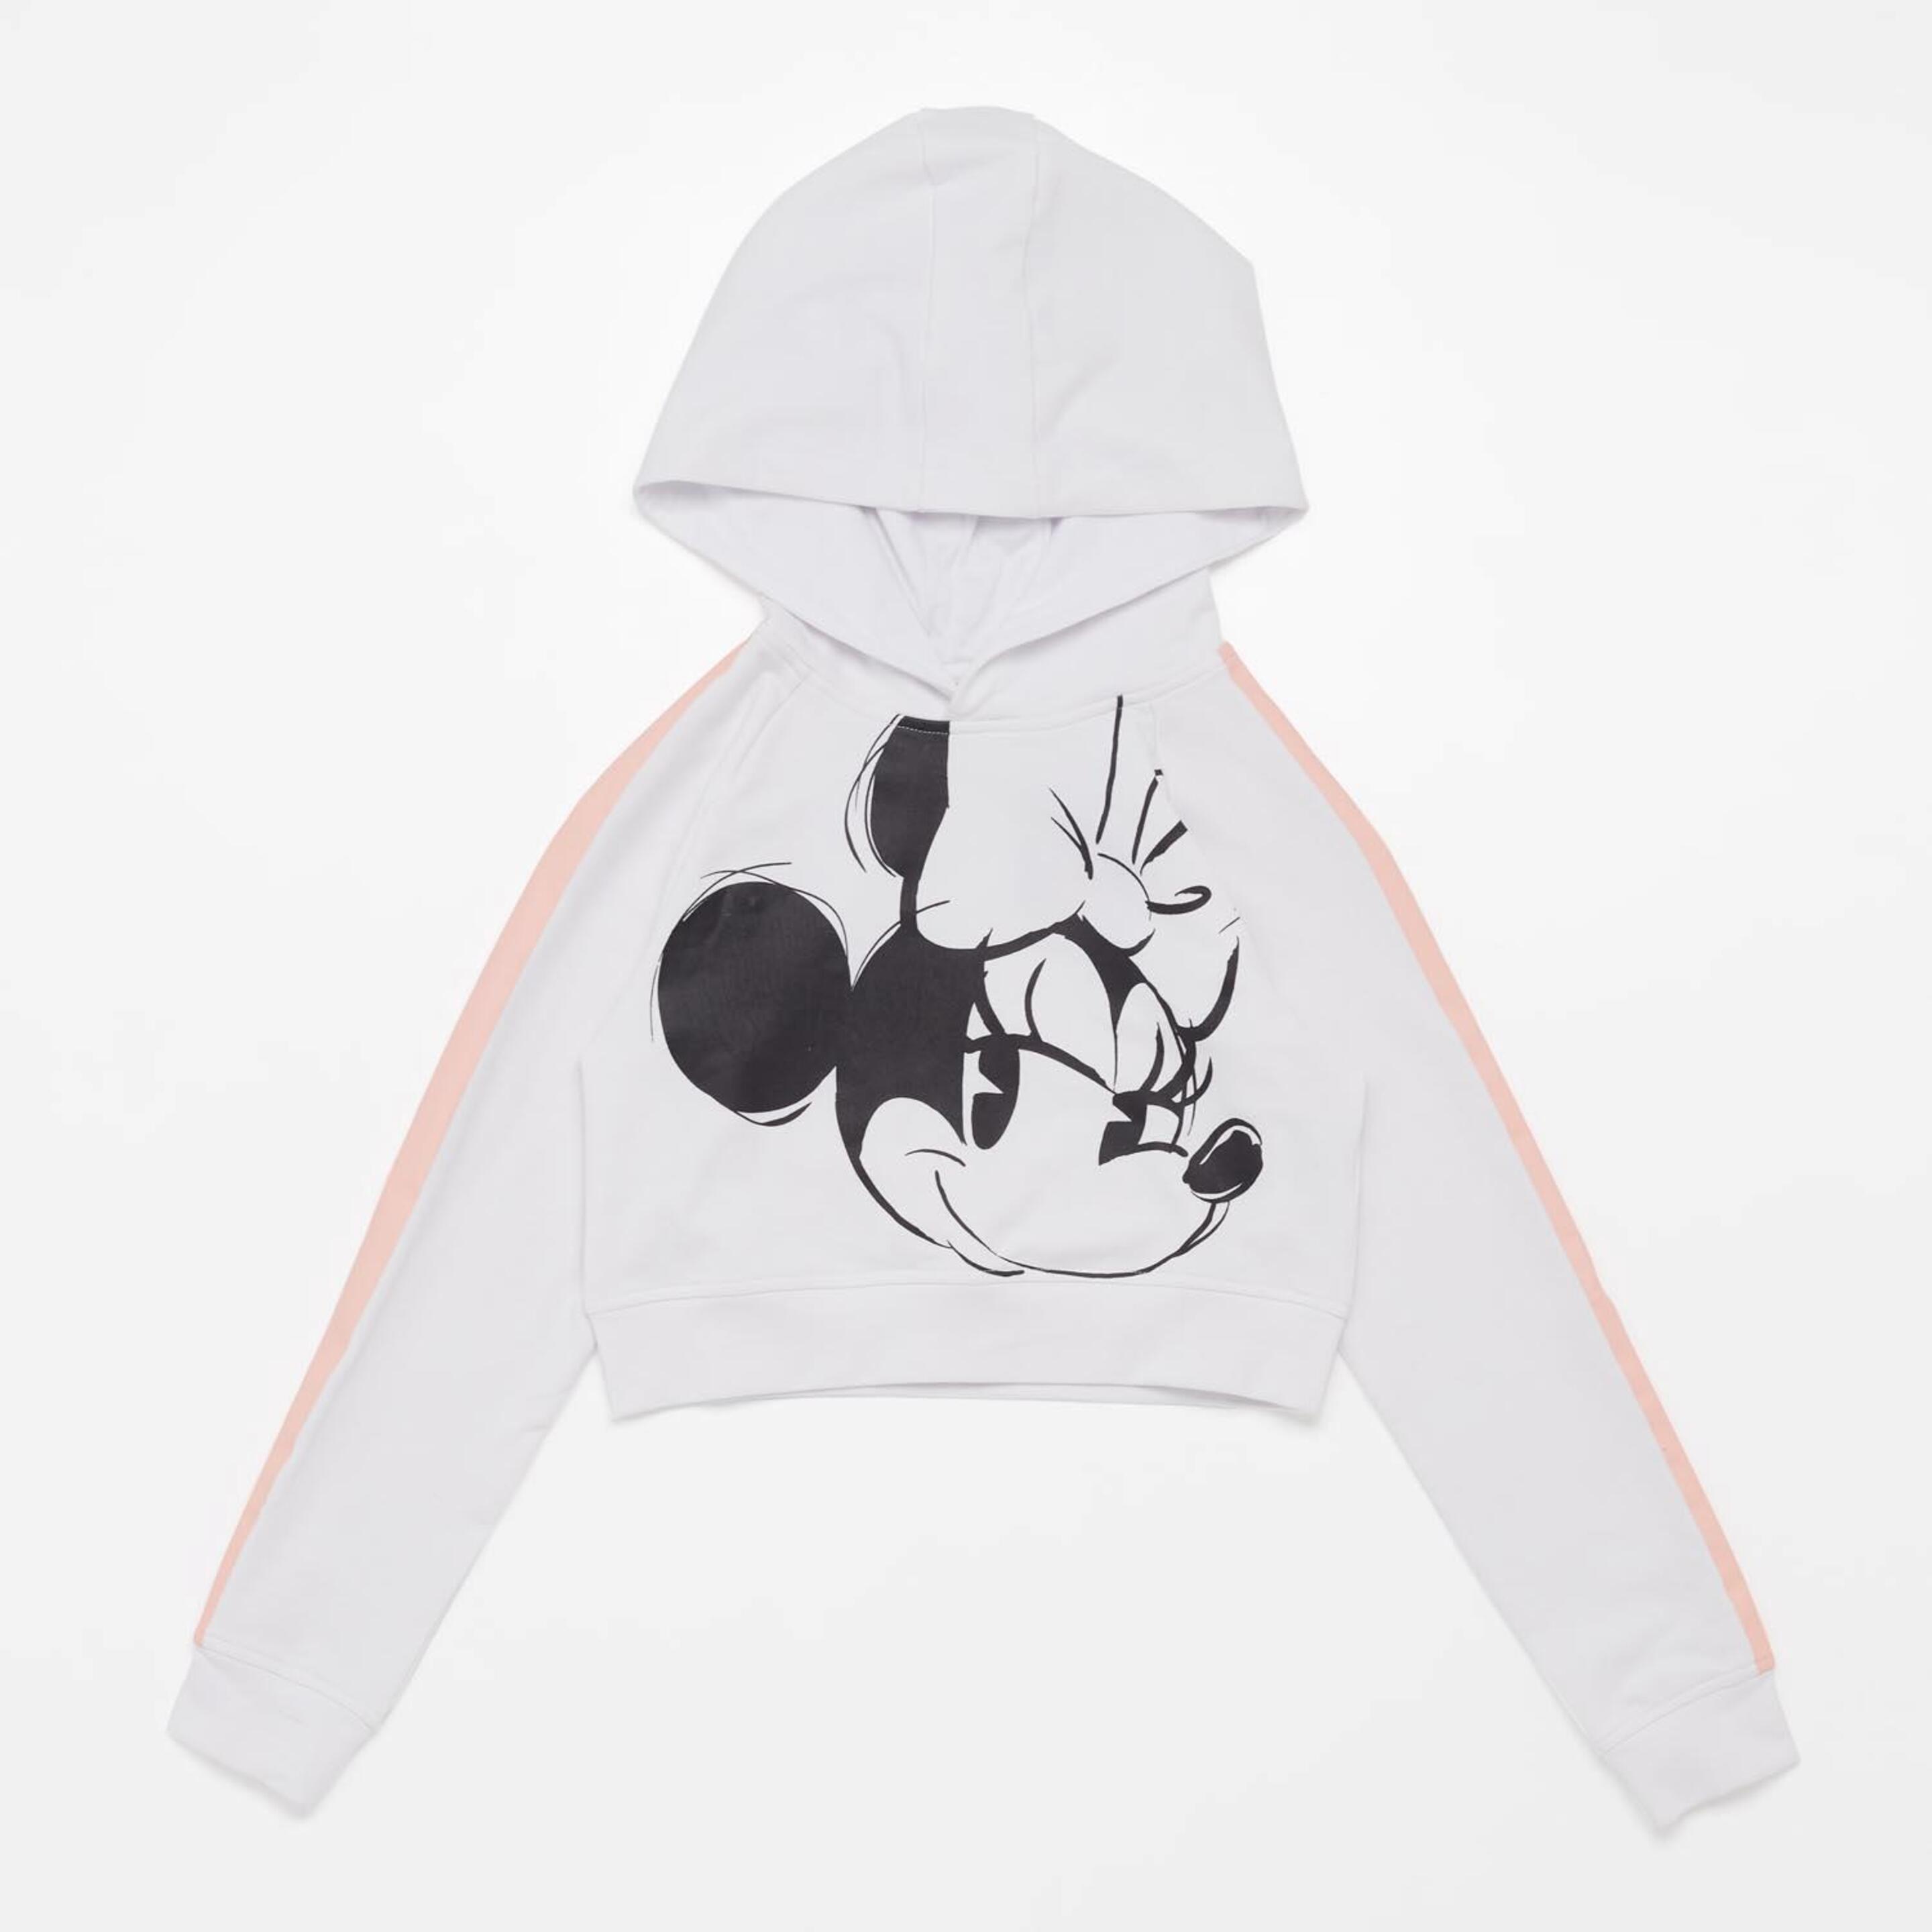 Sweatshirt Mickey